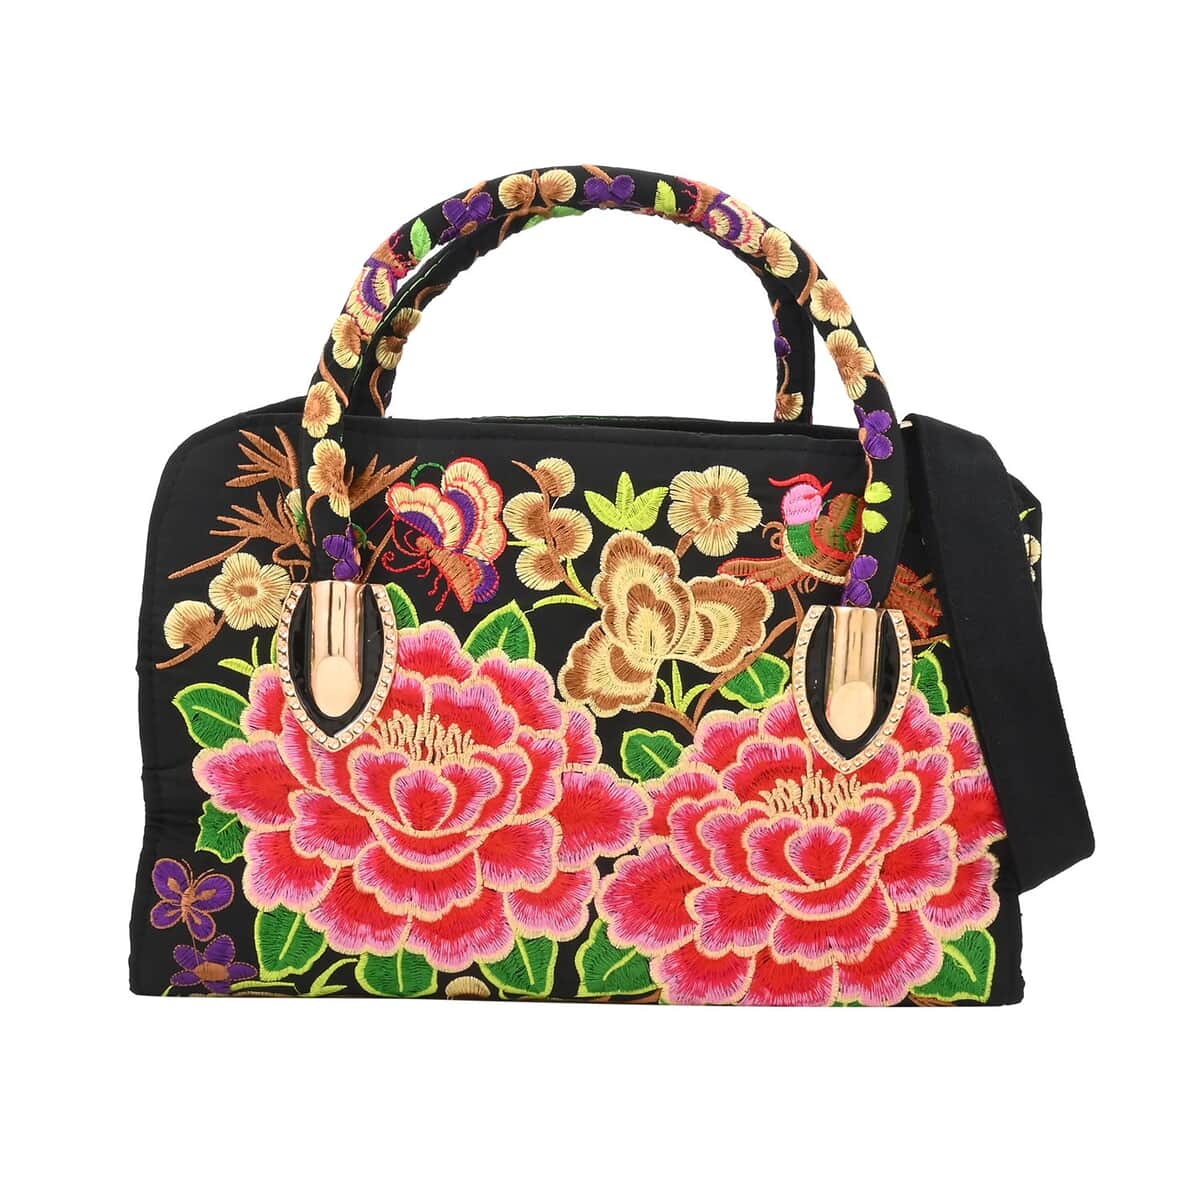 Pink Lotus Flower Embroidered Handbag with Shoulder Strap image number 0